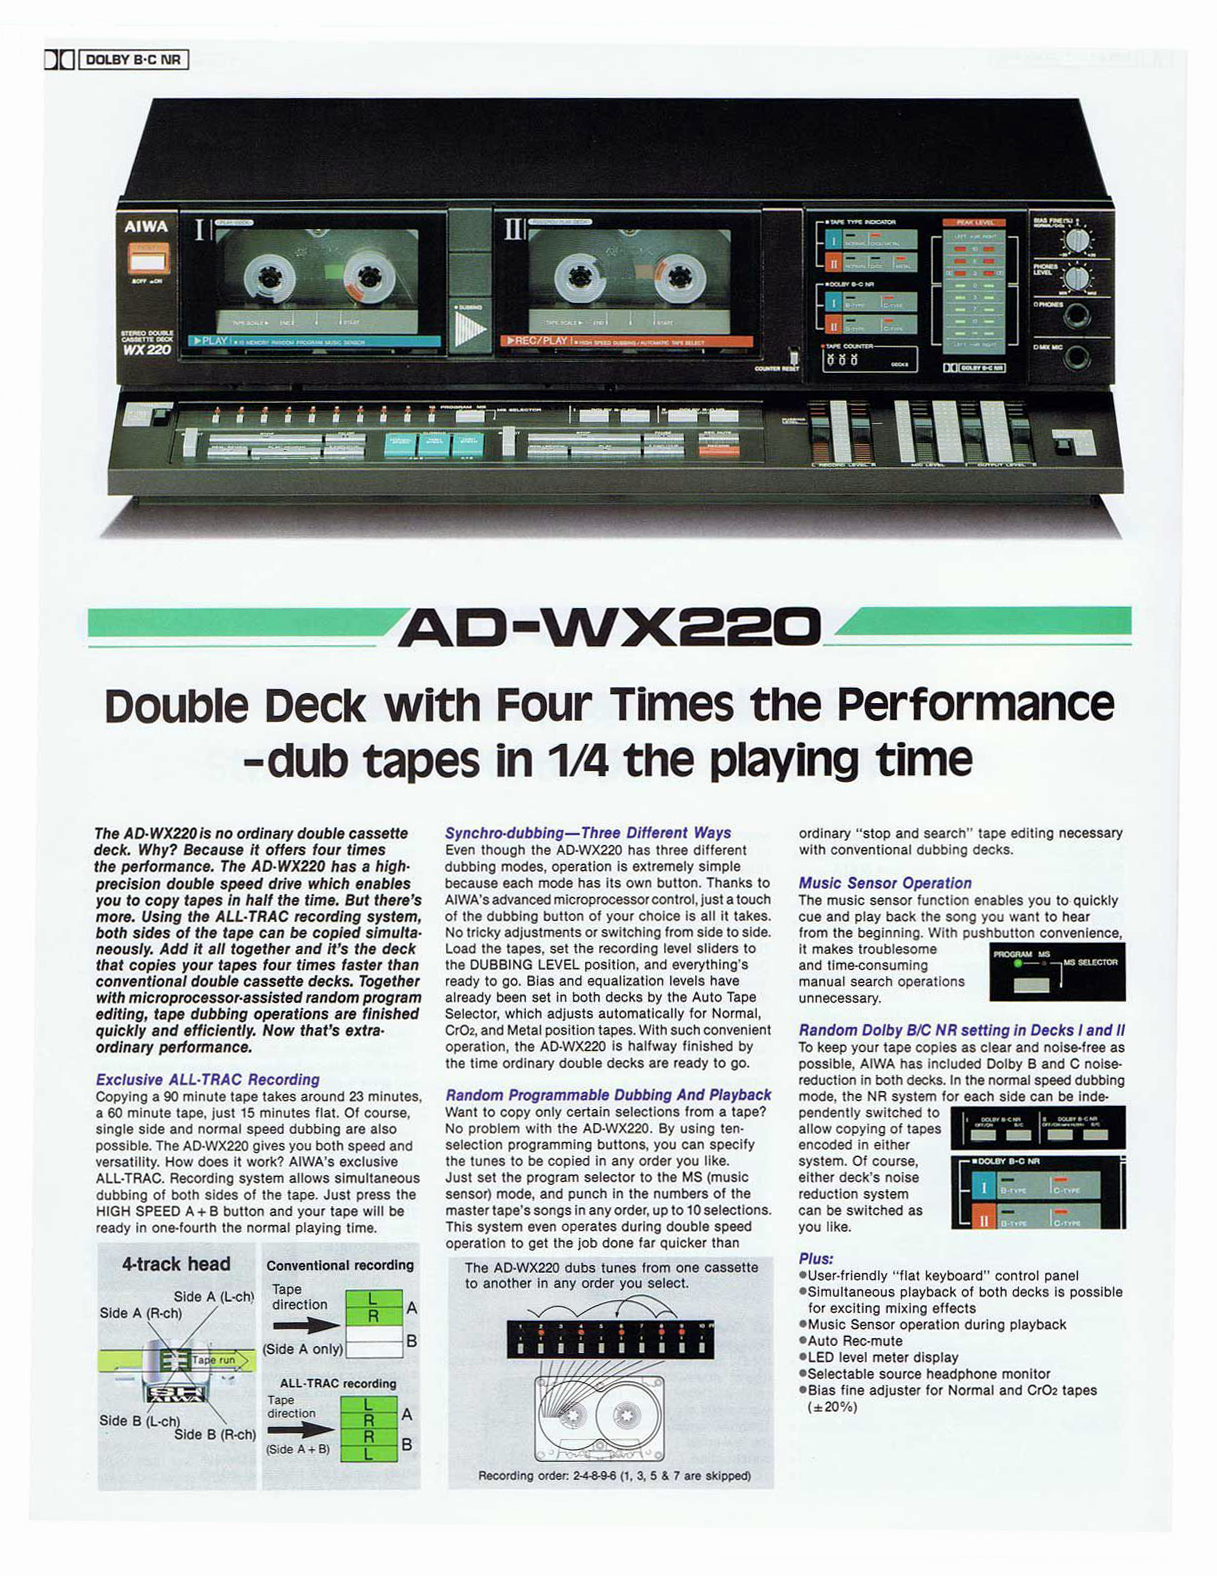 Aiwa AD-WX 220-Prospekt-1986.jpg